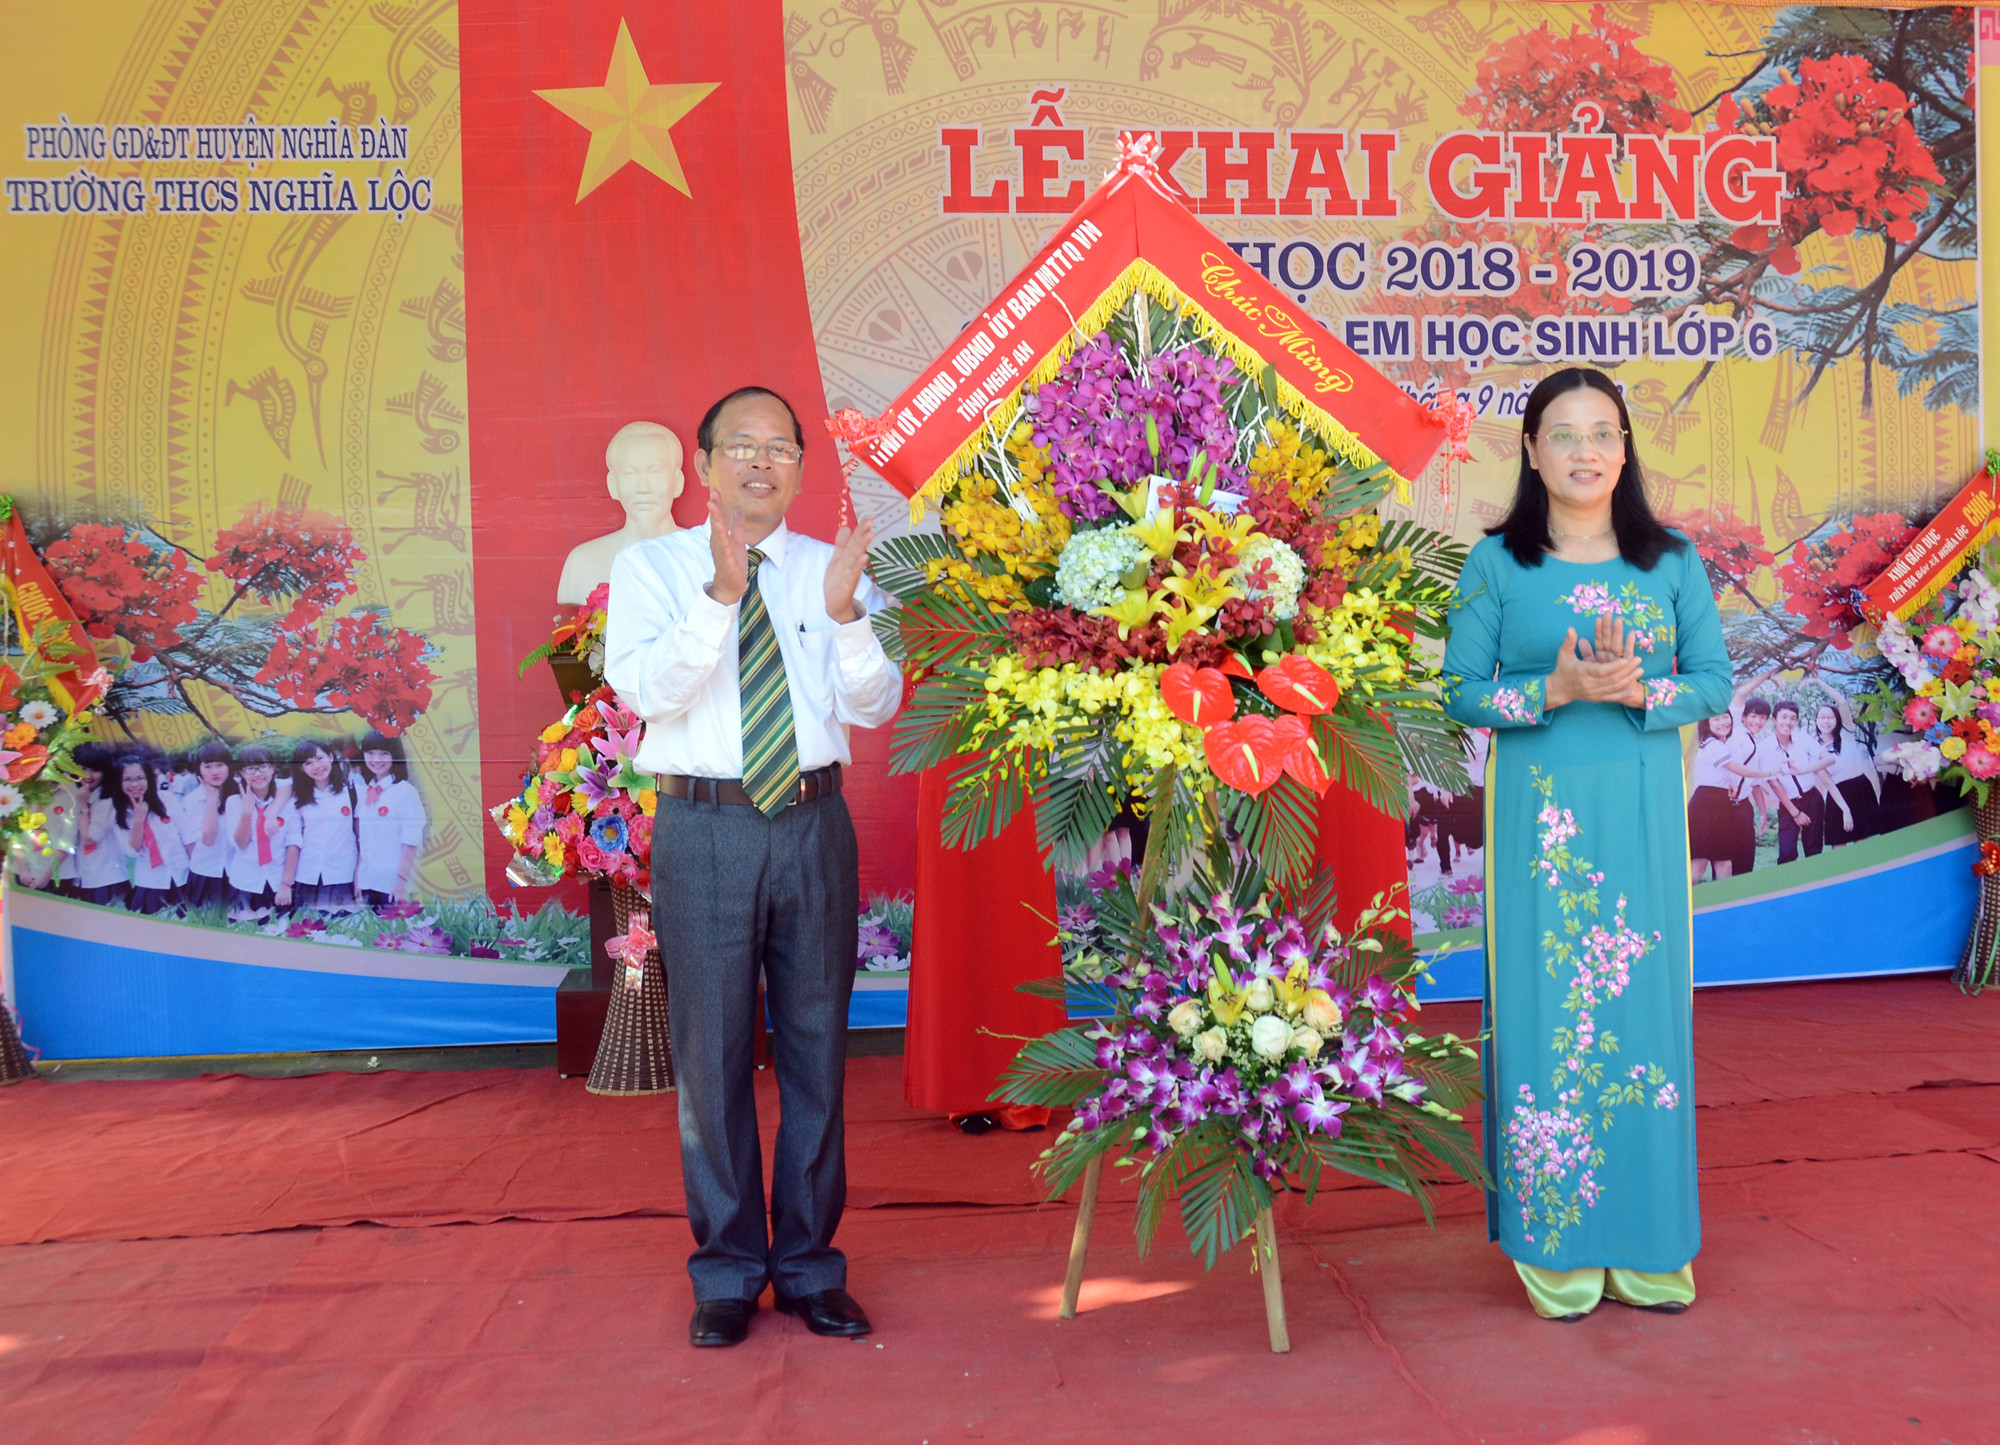 Đồng chí Cao Thị Hiền tặng hoa chúc mừng cho Trường THCS Nghĩa Lộc trong buổi lễ khai giảng. Ảnh: Thành Chung